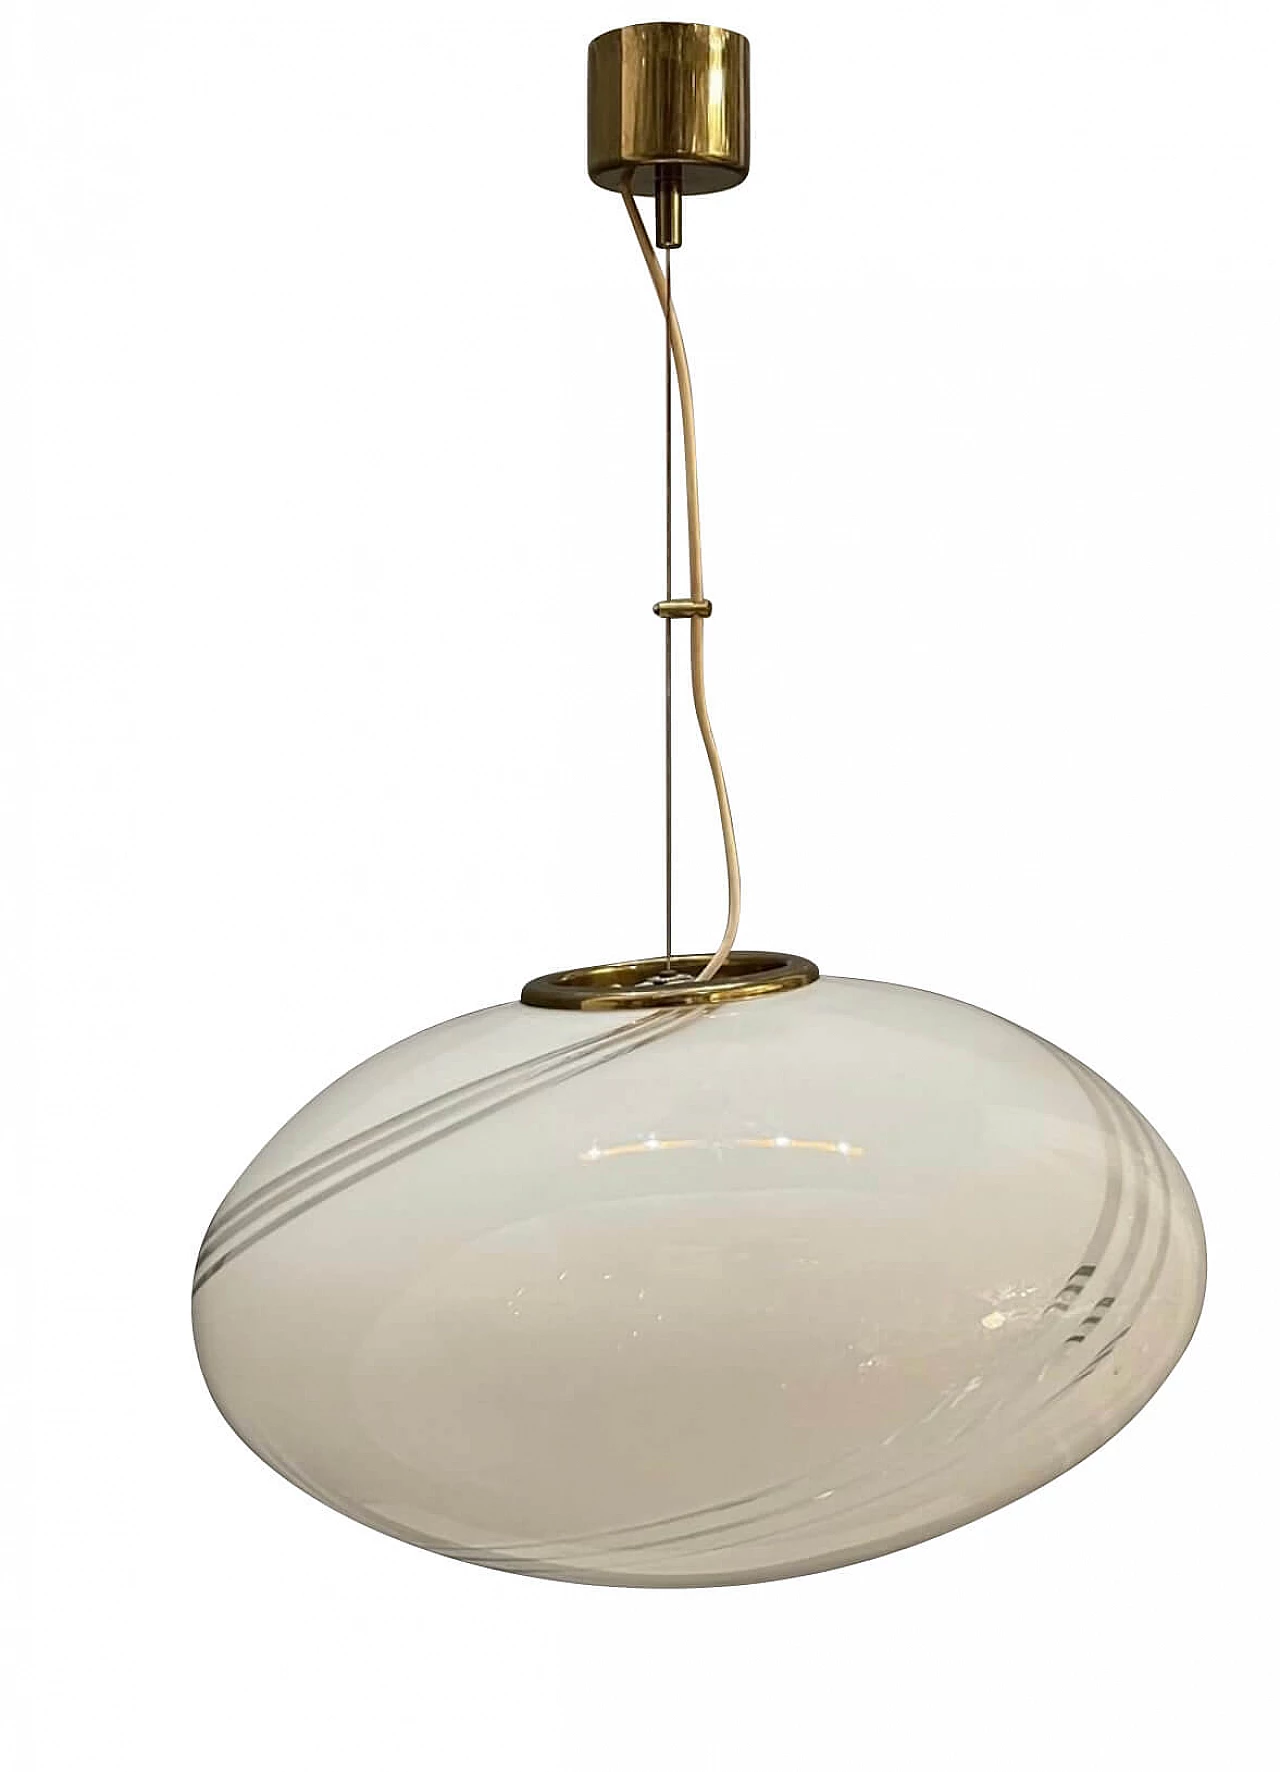 Suspension lamp in Murano glass by Venini, 1950s 1192736